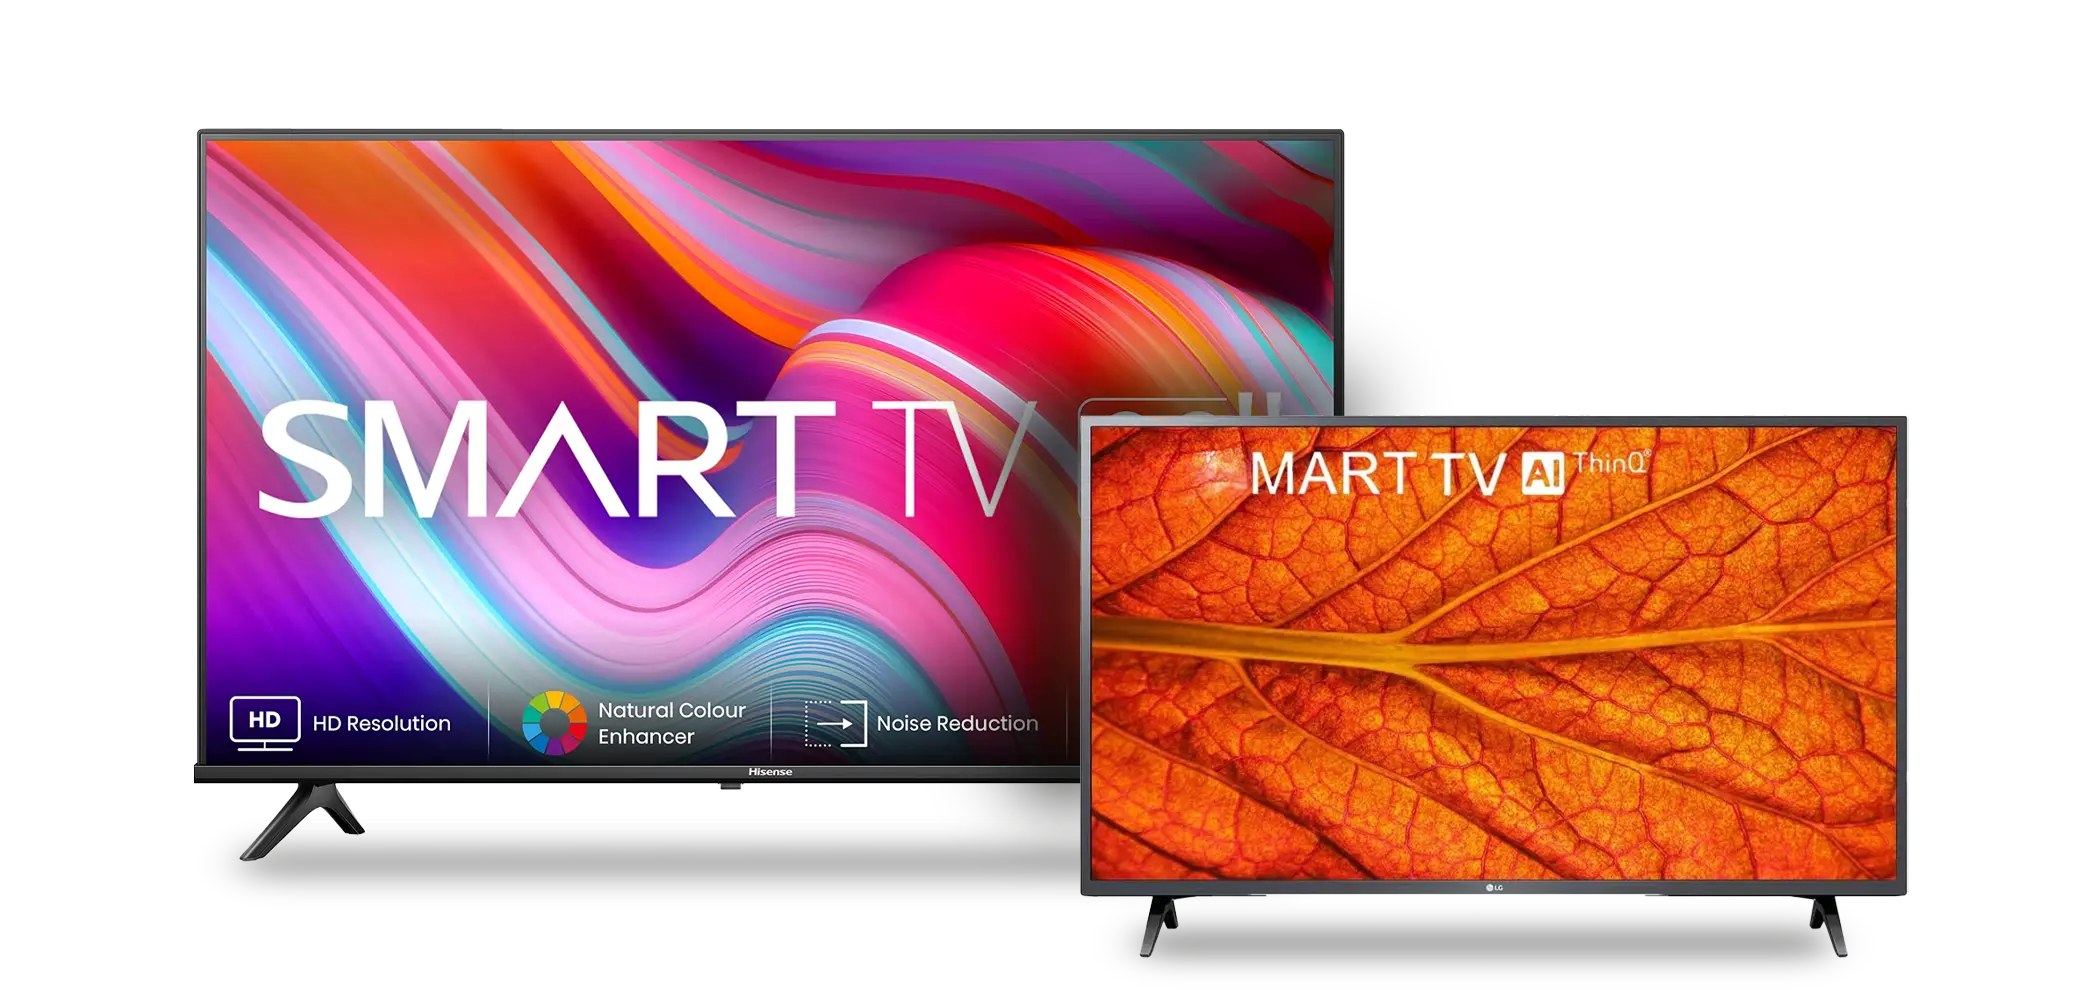 Pantalla smart tv de 32 pulgadas full hd. – Aeromall – Tu Centro comercial  en linea